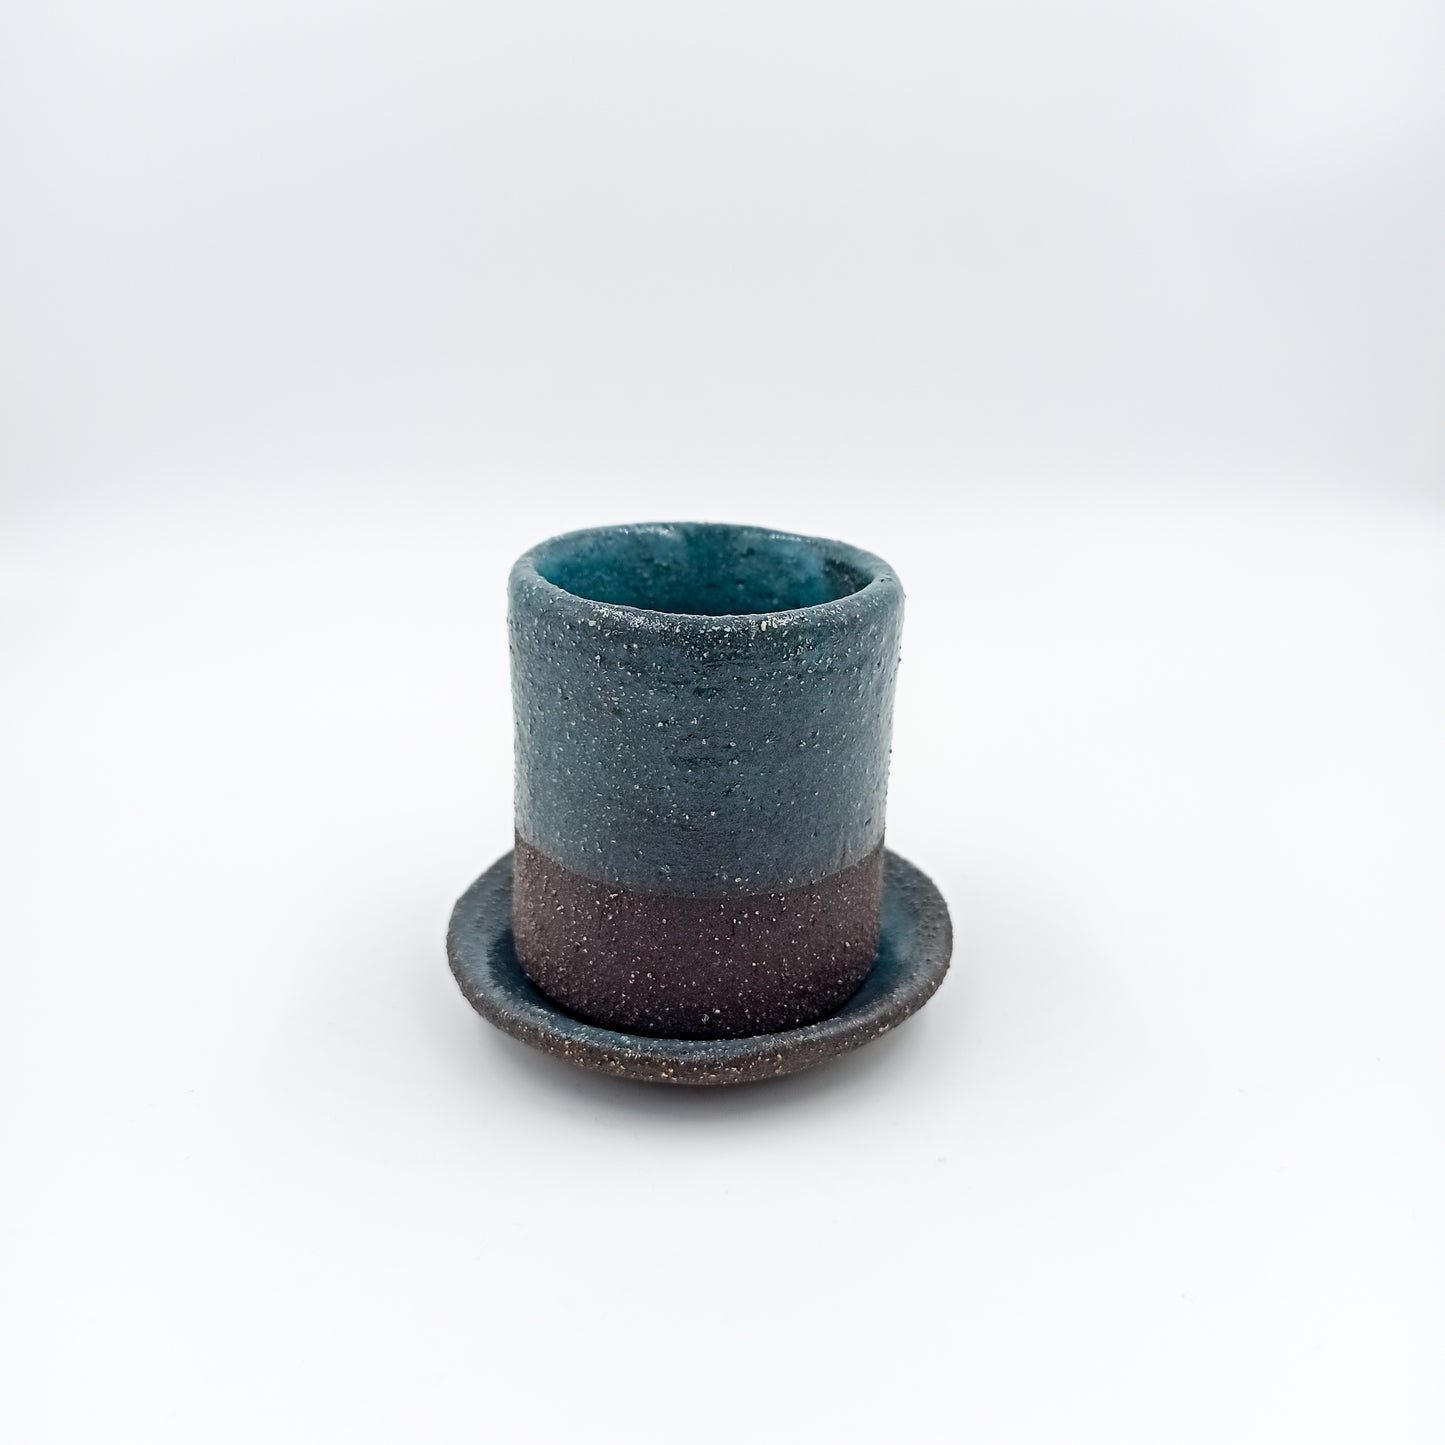 Handbuilt ceramic espresso cup